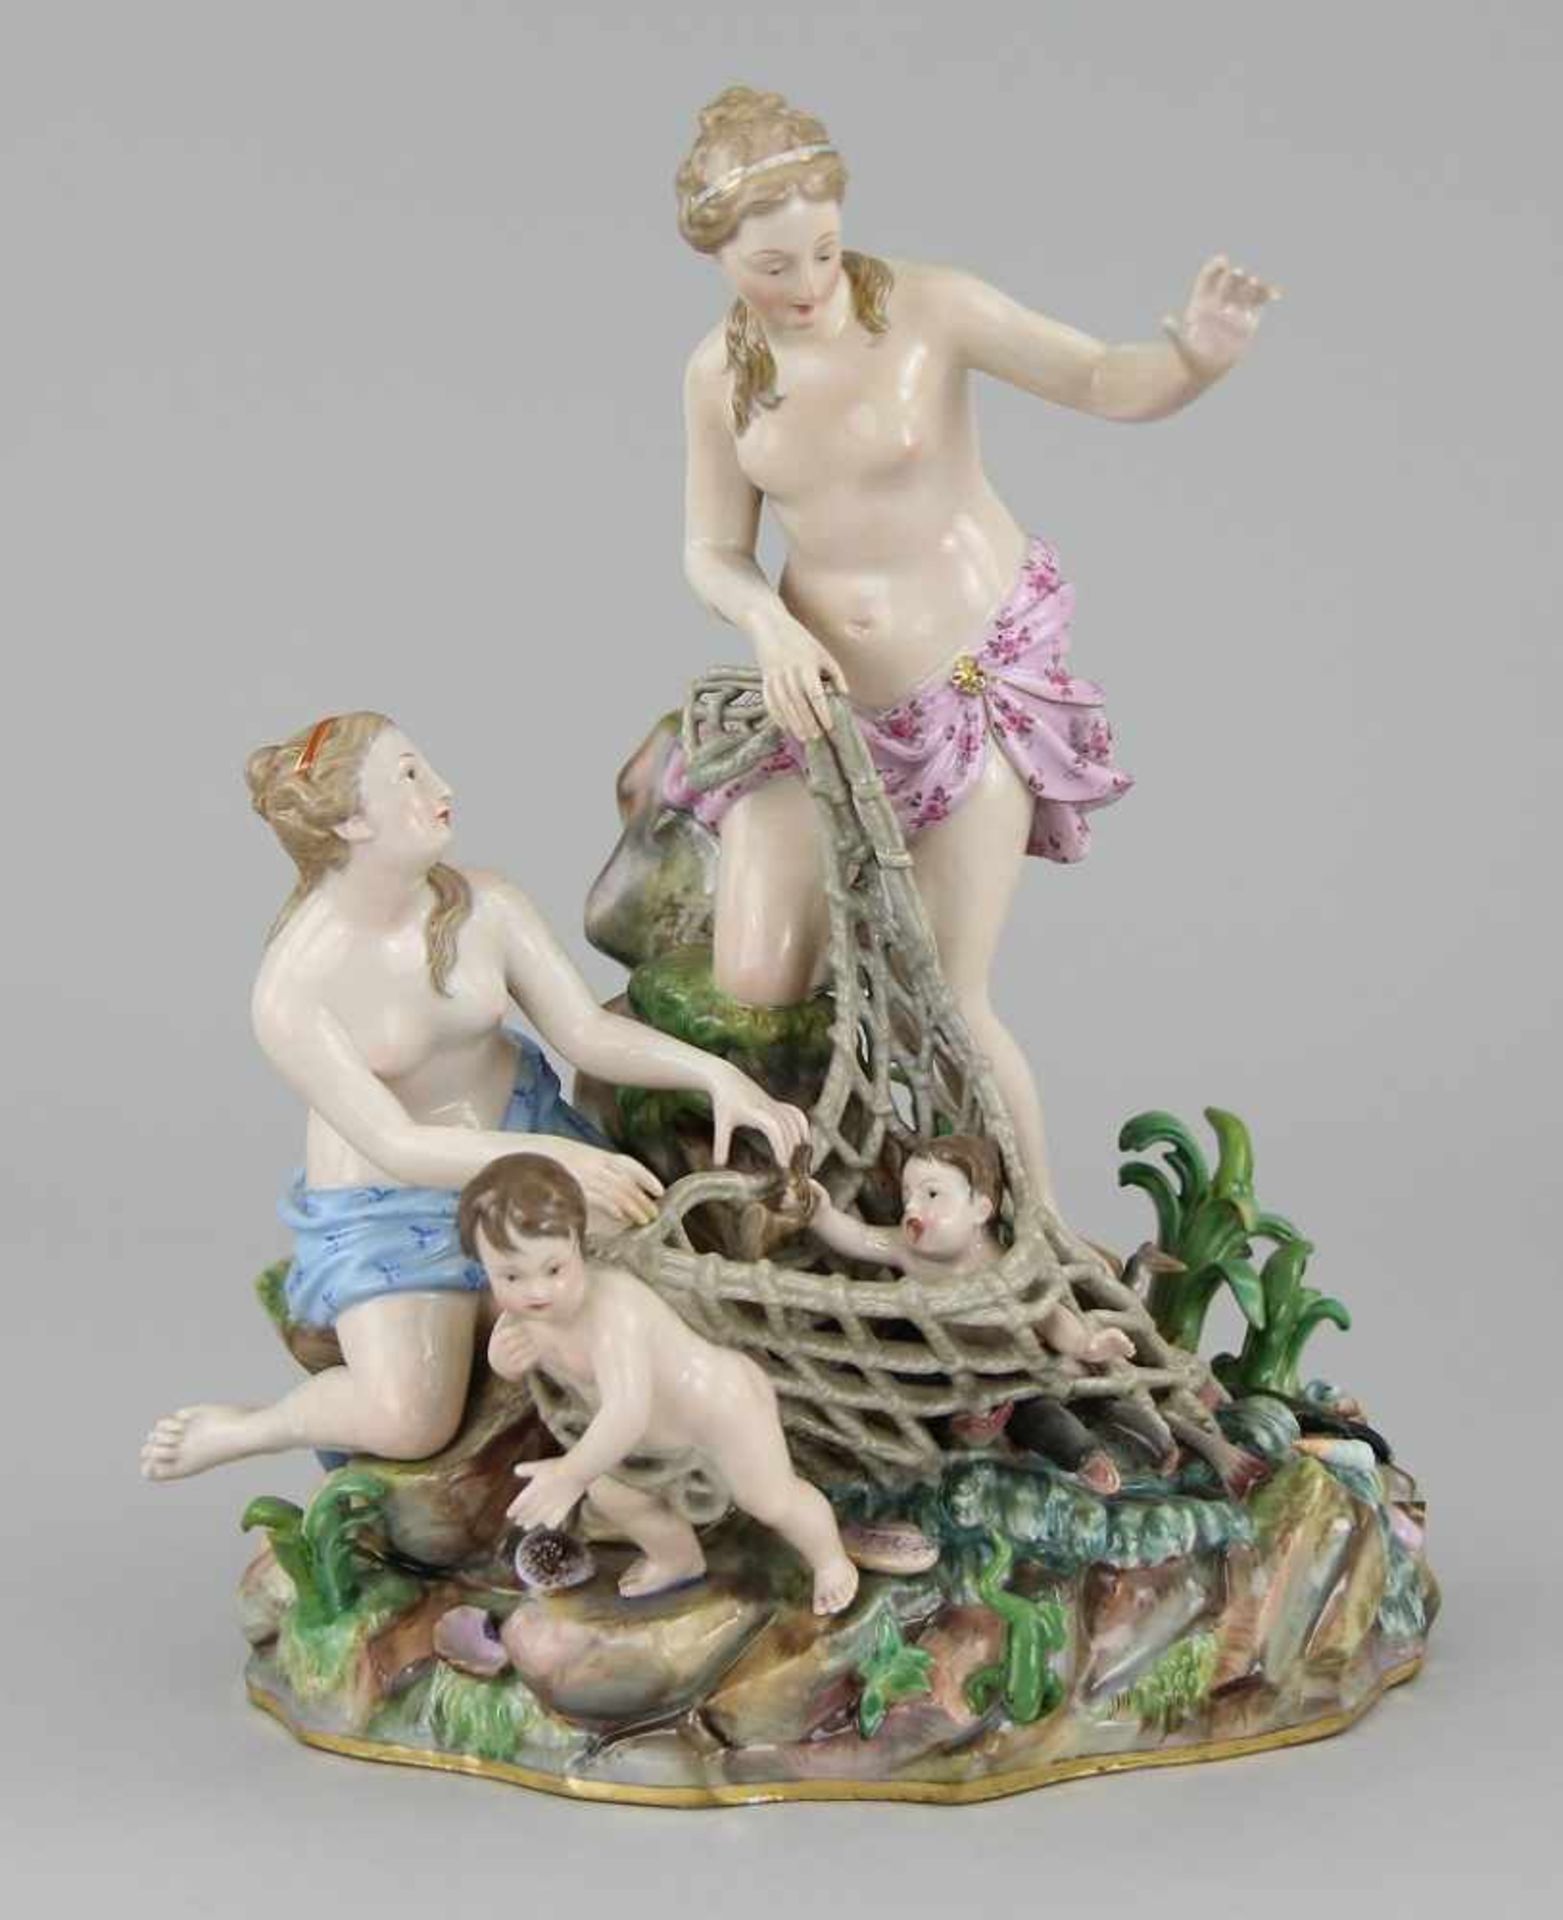 Meissen - Figurengruppe "Tritonenfang" Porzellan farbig bemalt und leicht vergoldet, zwei Nereiden